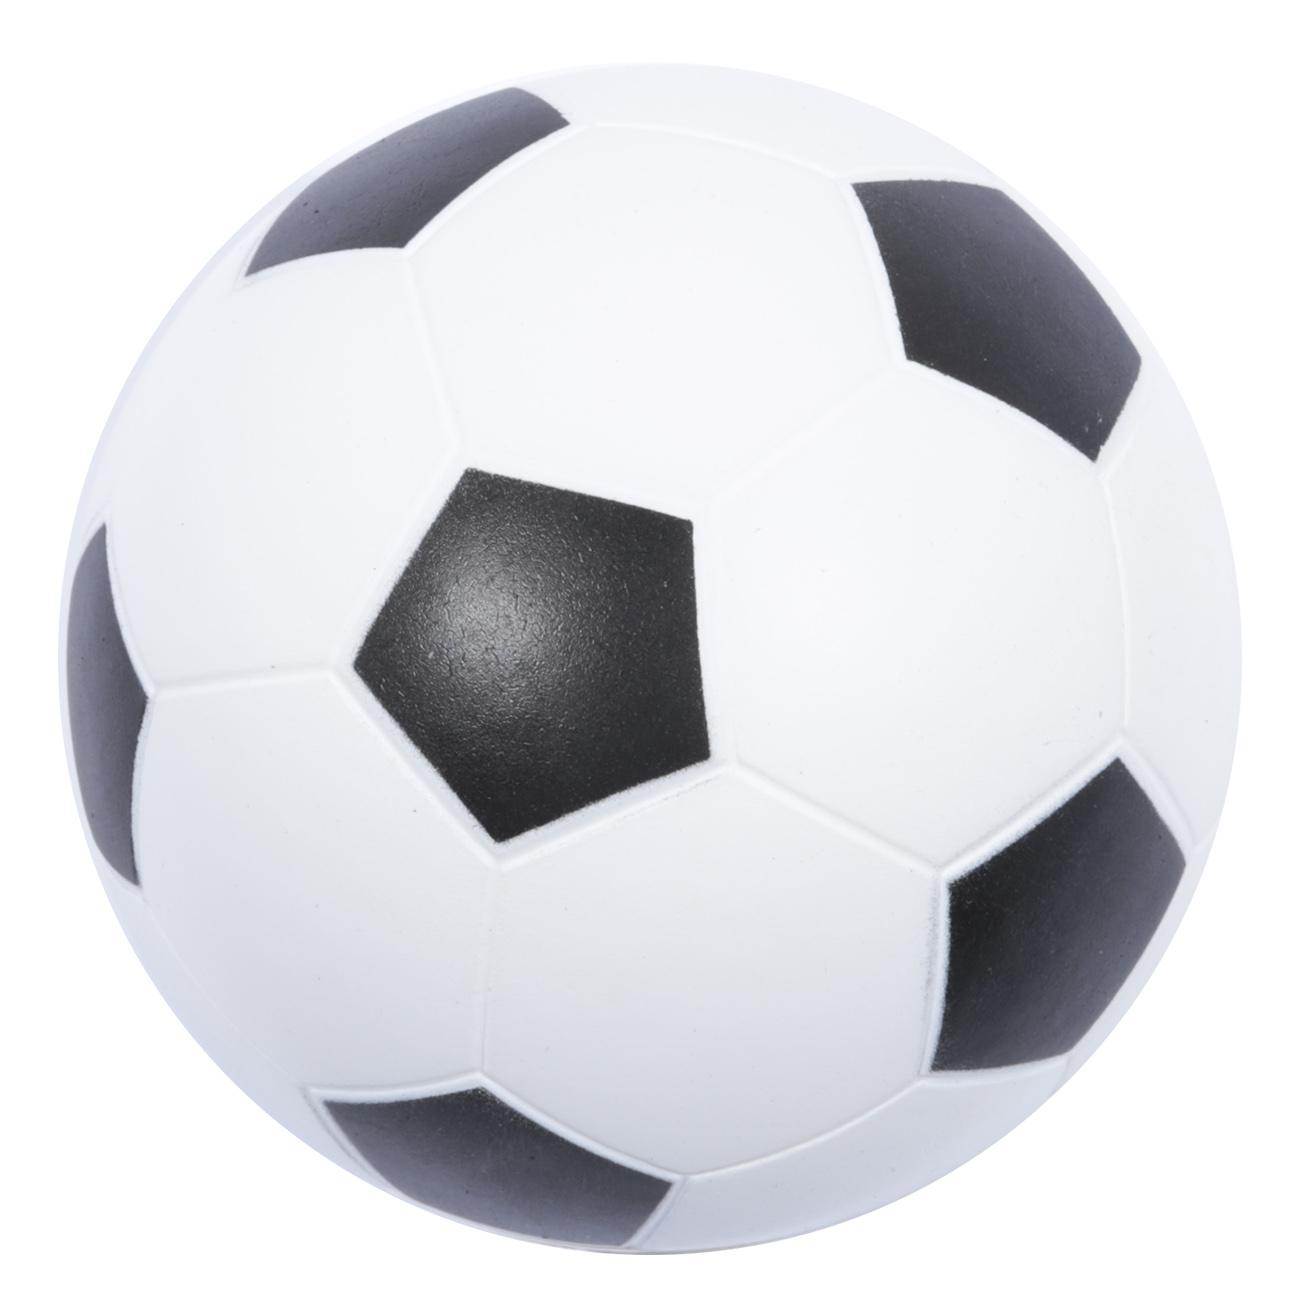 Мяч, 13 см, полиуретан, бело-черный, Футбол, Game - фото 1